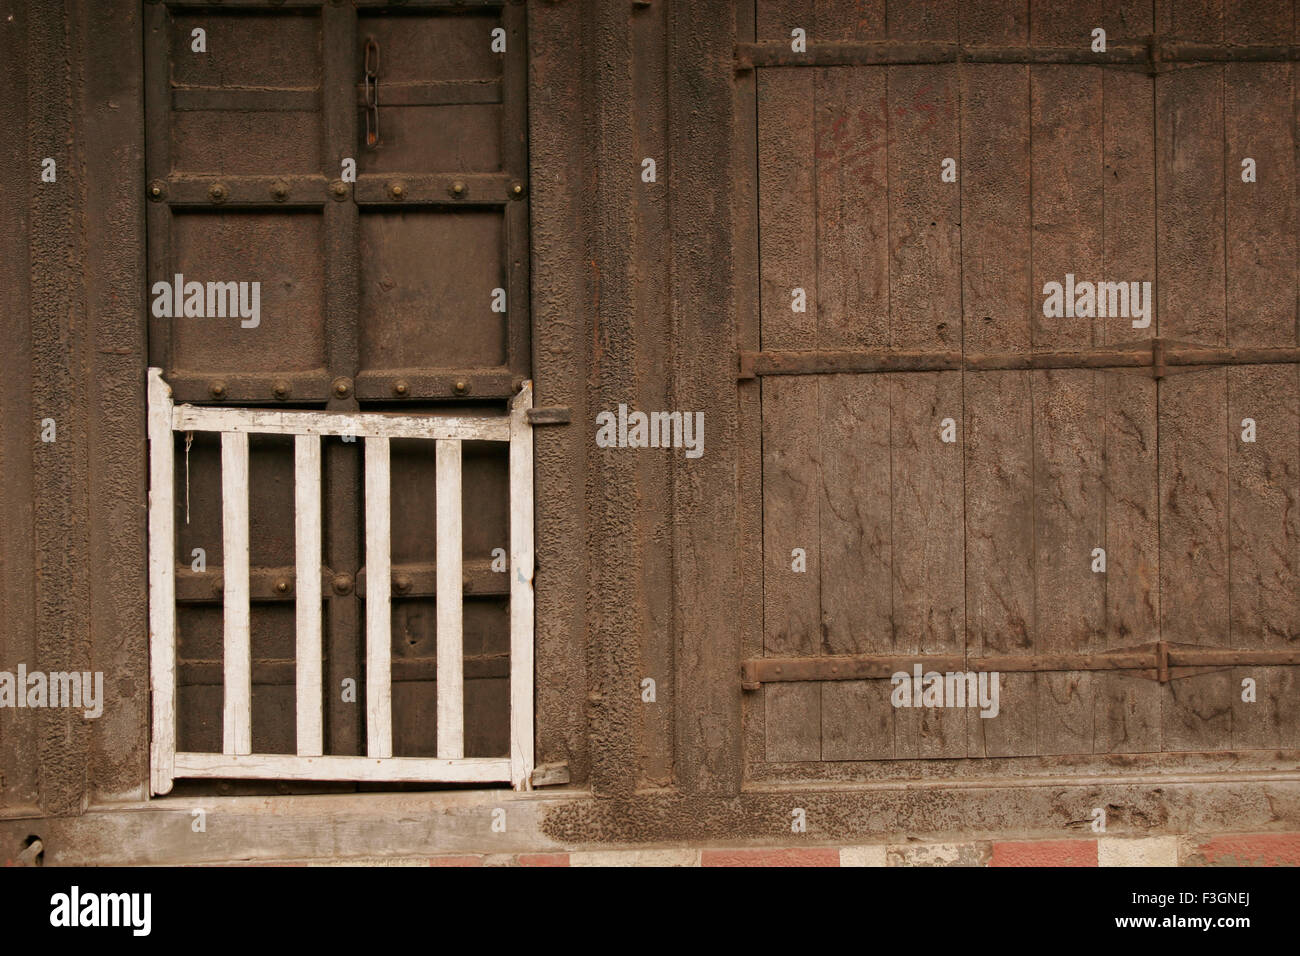 Resumen de una puerta de polvo negro con textura y una mitad de barandilla blanca una especie de puerta de una vieja estructura ; ; Bhor Pune Foto de stock